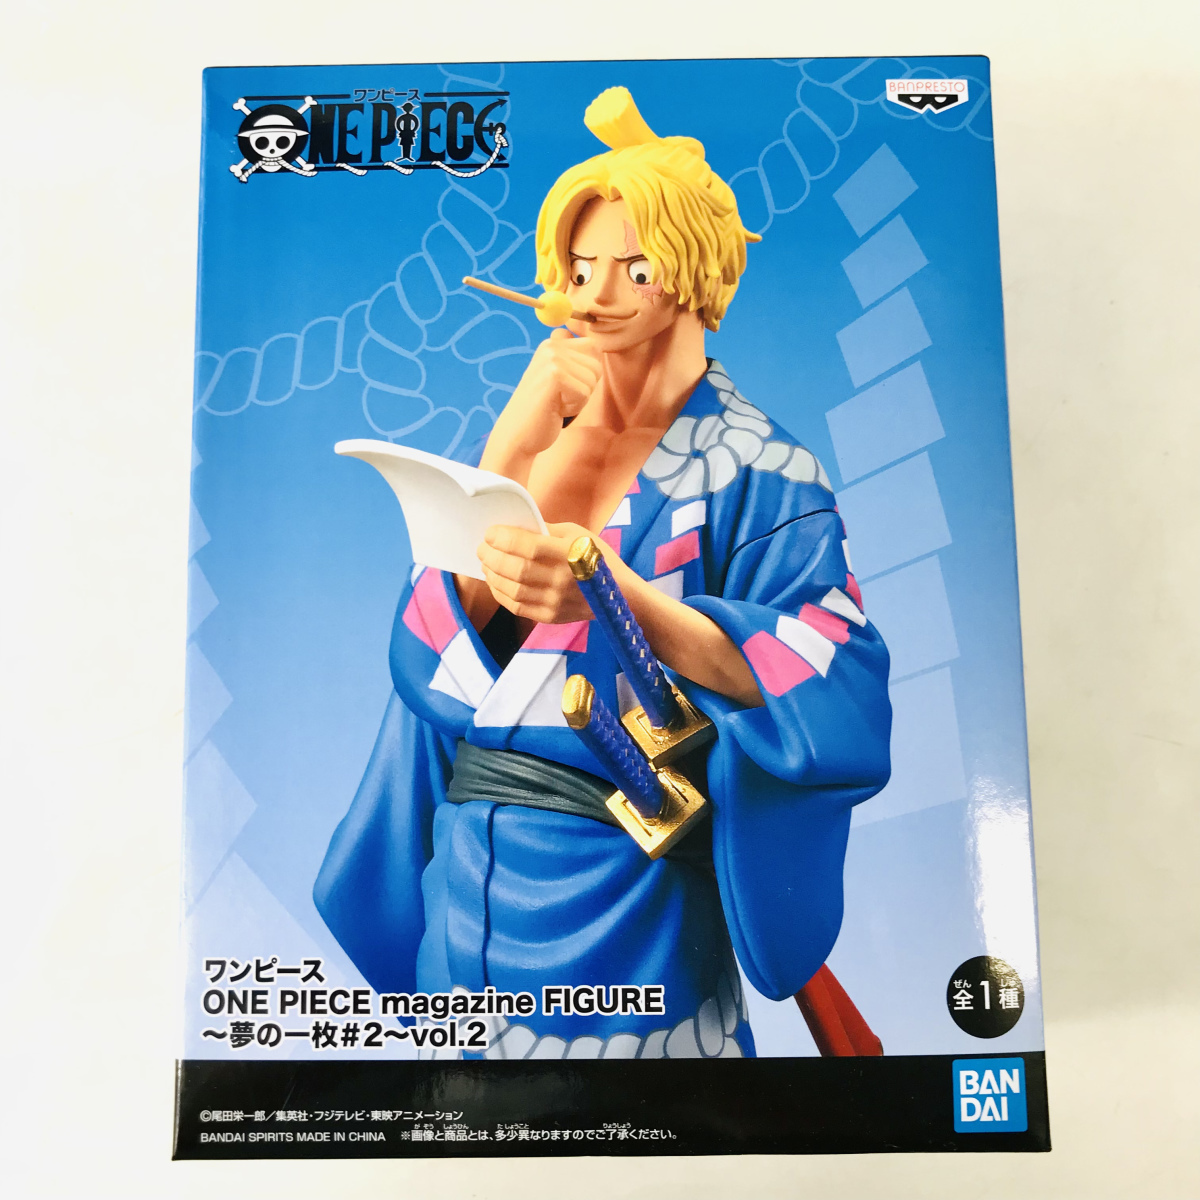 ワンピース One Piece Magazine Figure 夢の一枚 2 Vol 2 サボ One Piece 売買されたオークション情報 Yahooの商品情報をアーカイブ公開 オークファン Aucfan Com